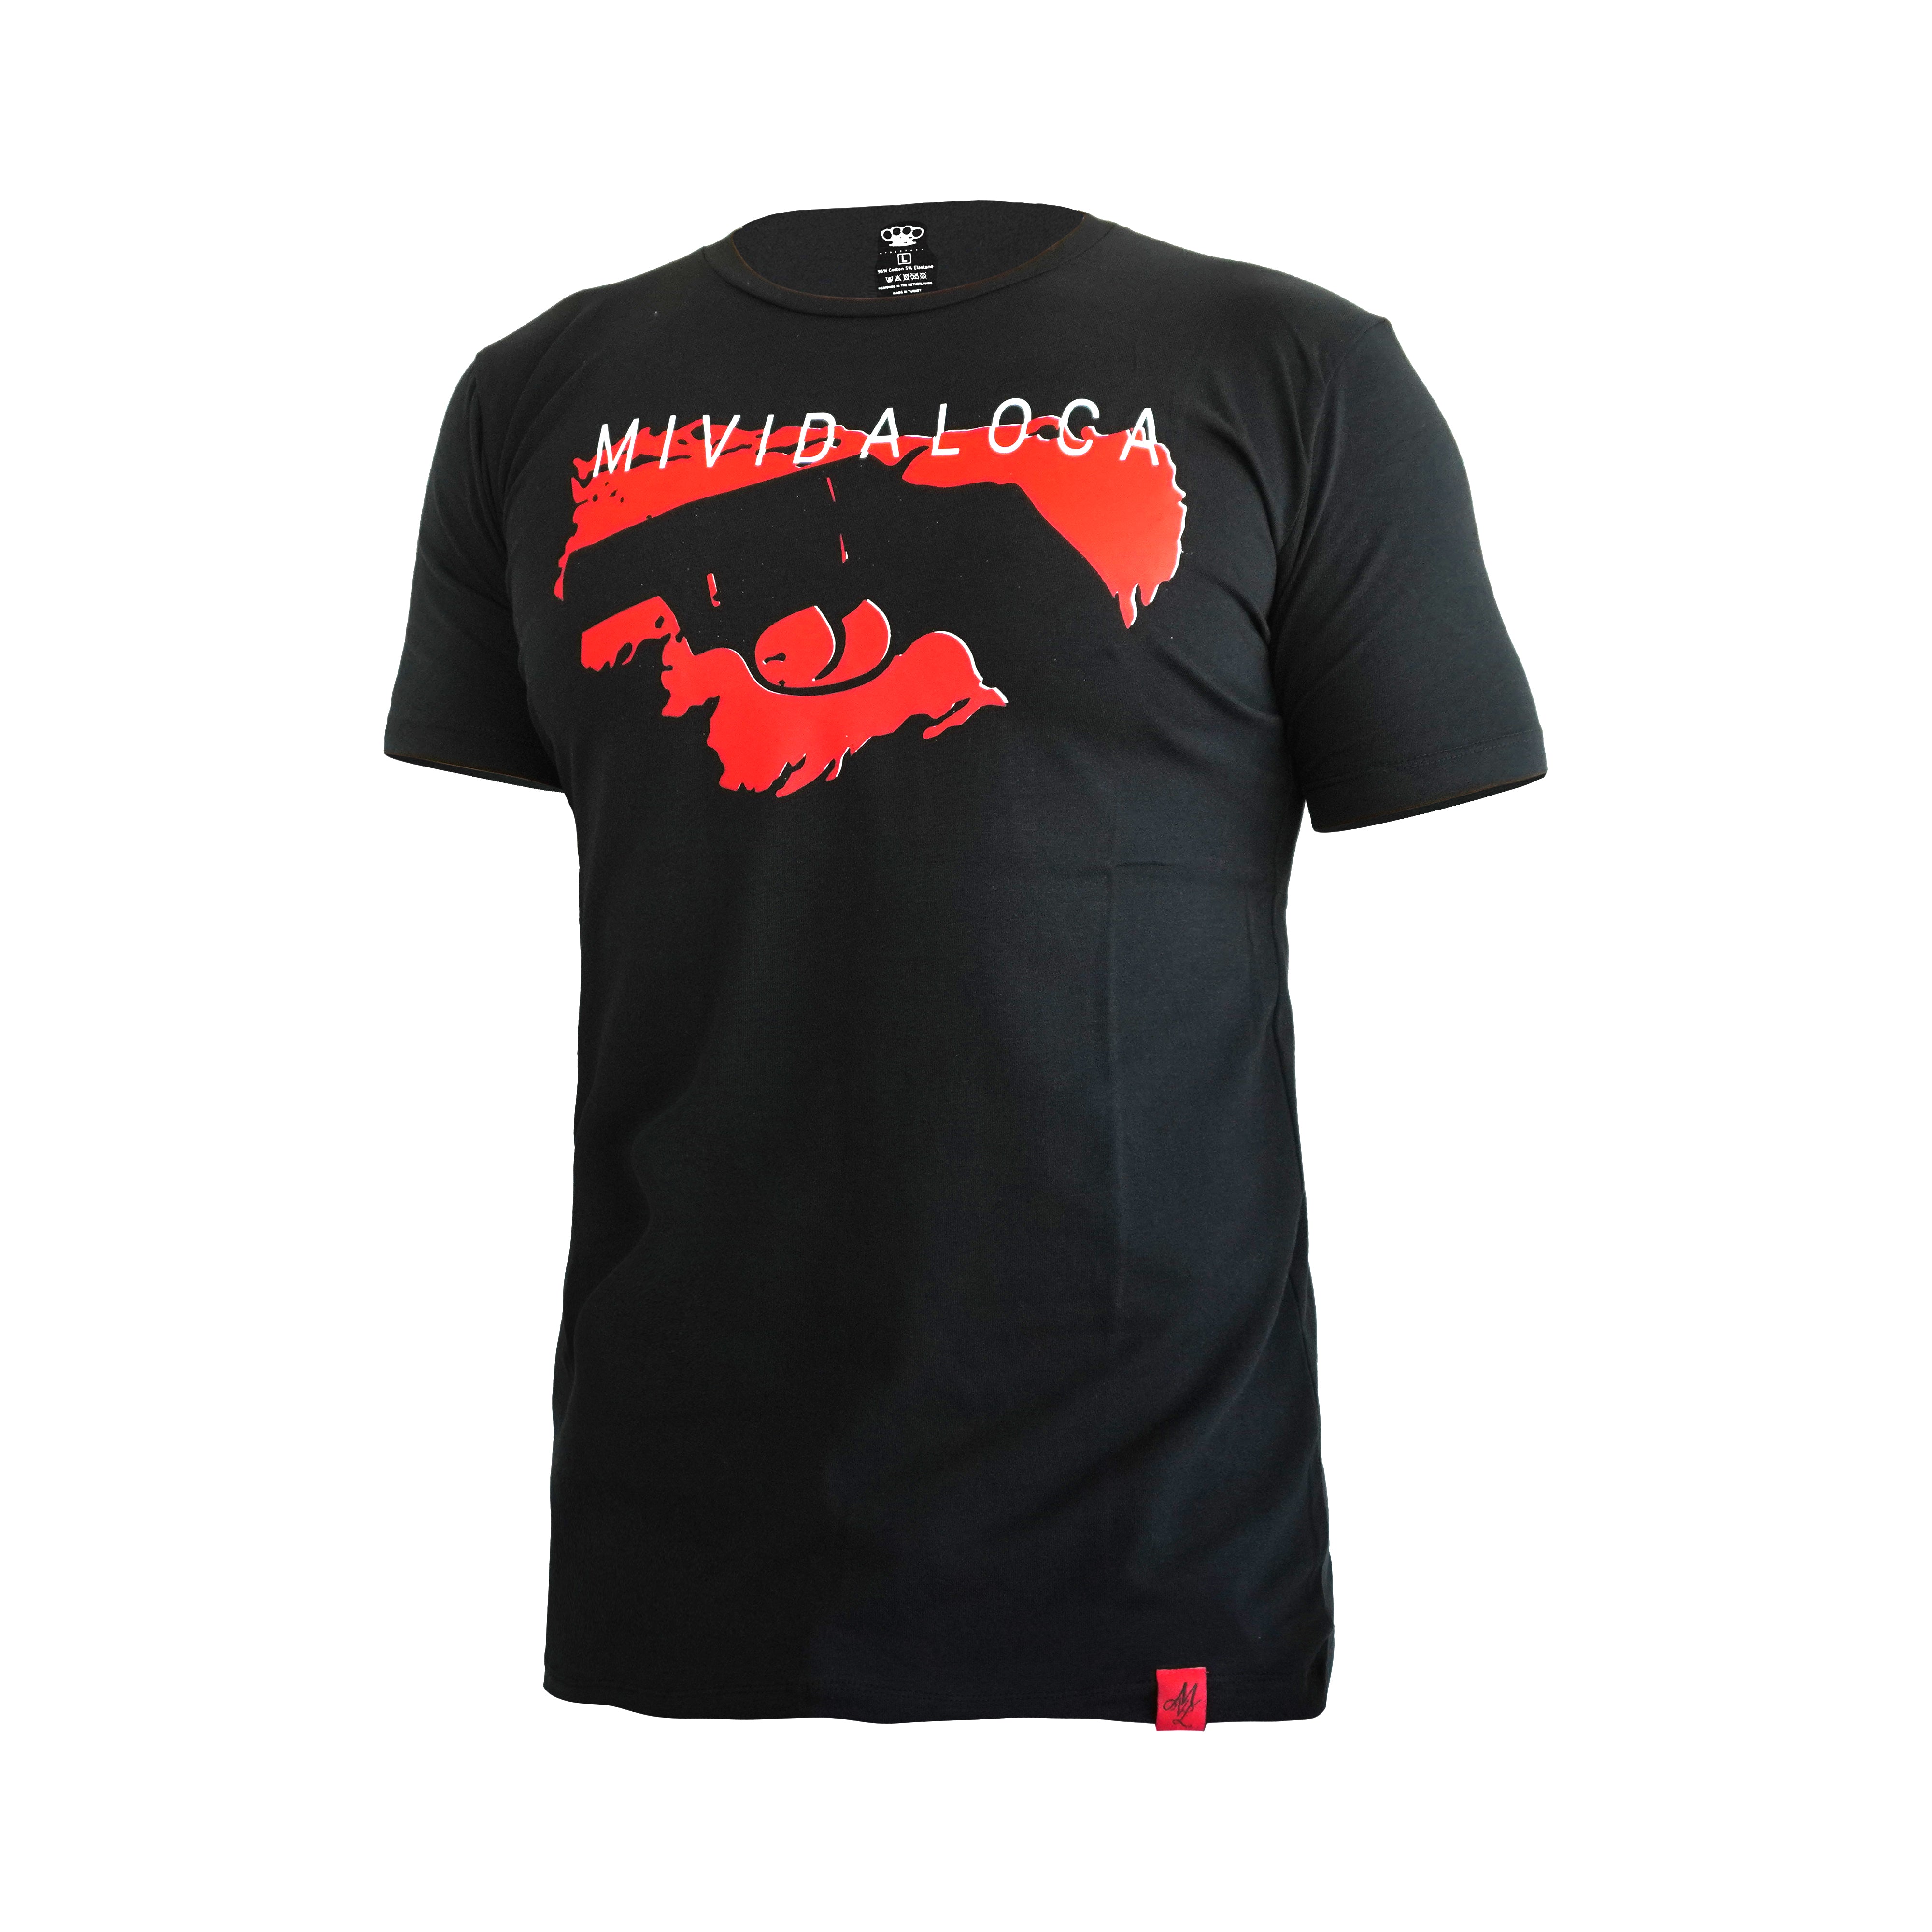 Camiseta MVL "Bulldog